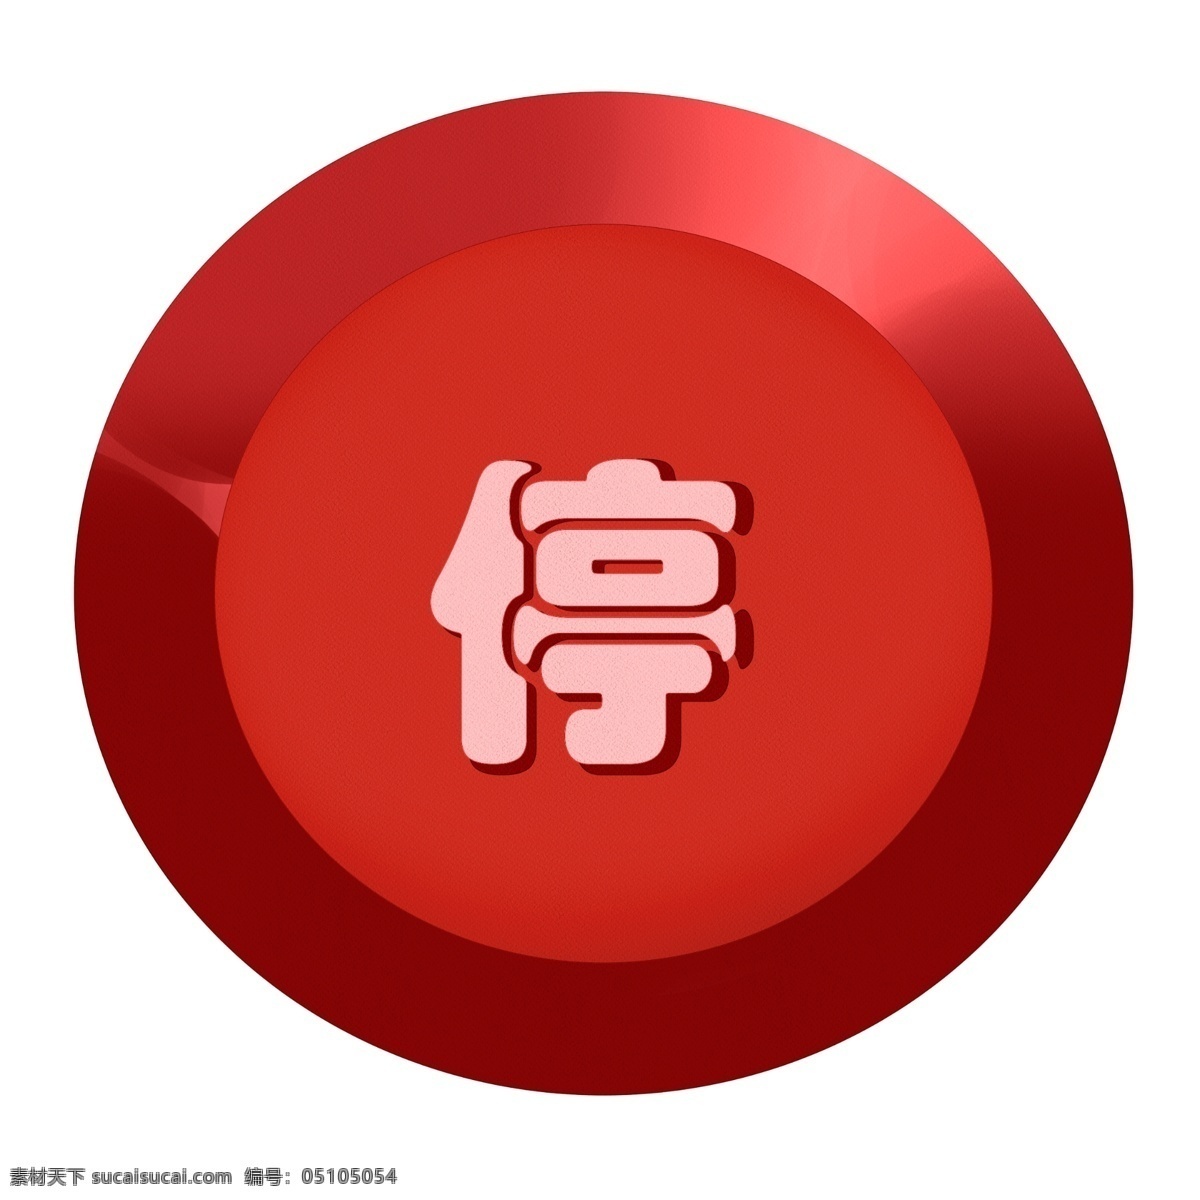 红色 漂亮 停止 按钮 插画 红色按钮 停止按钮插画 警告按钮 预警按钮 危险按钮 漂亮的按钮 提示按钮